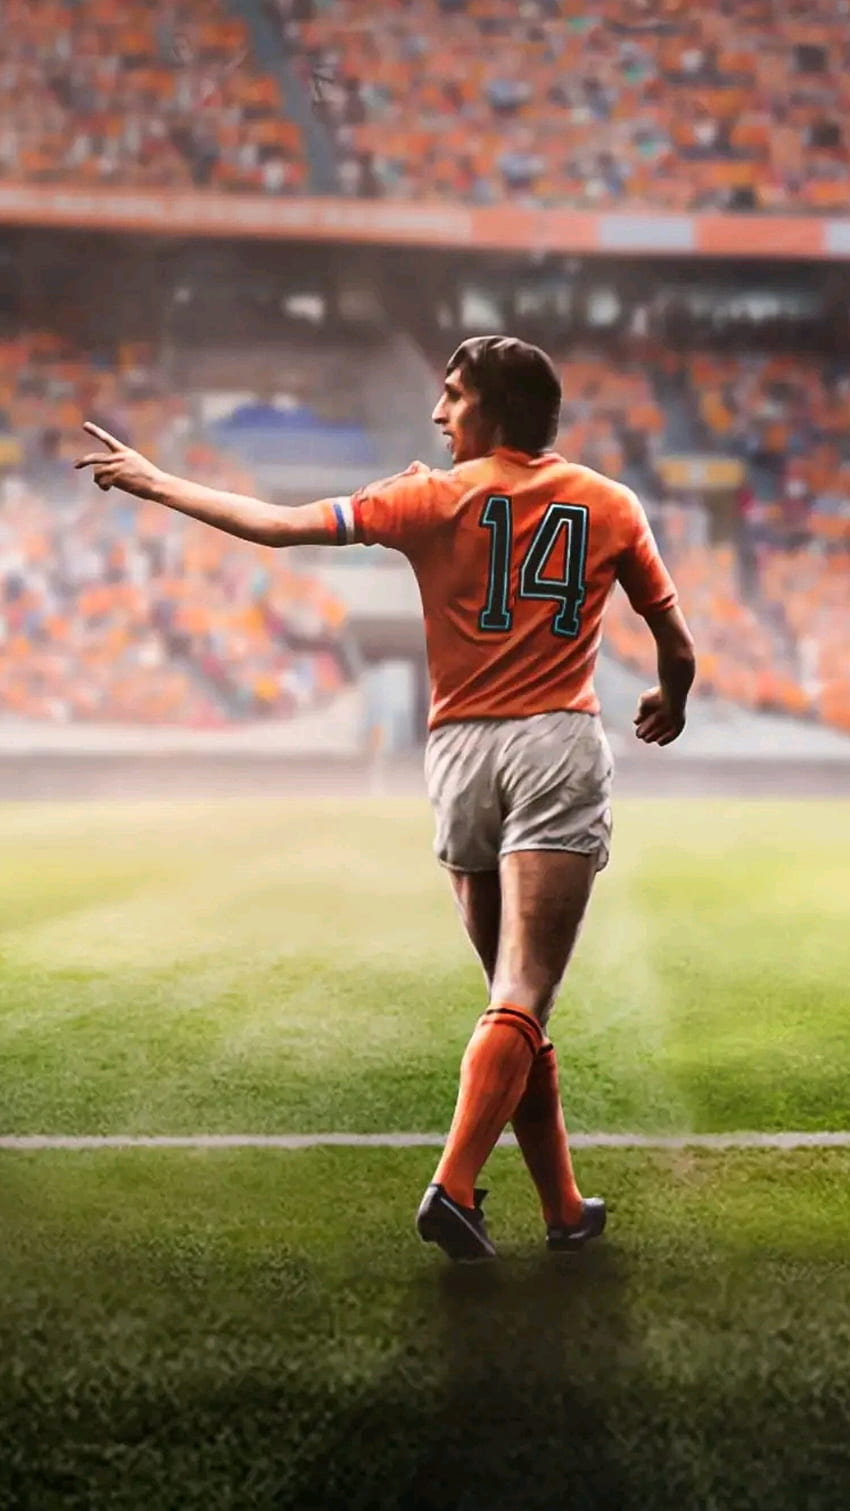 Johan Cruyff, pomarańczowy, piłka nożna, holandia, 14 lat, piłka nożna, gracz Tapeta na telefon HD